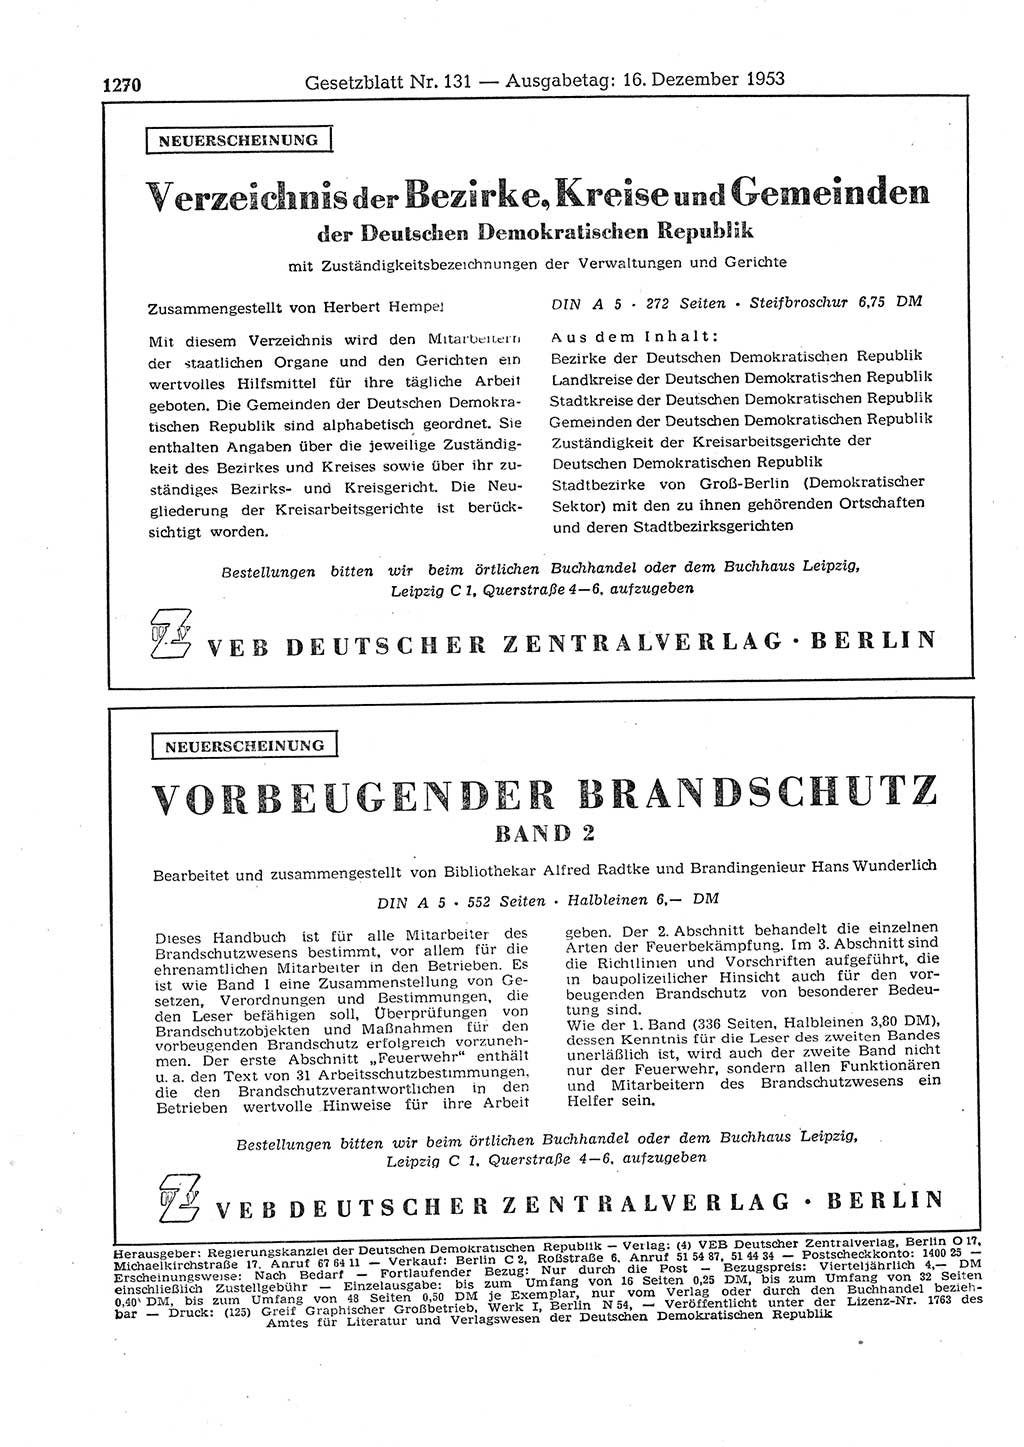 Gesetzblatt (GBl.) der Deutschen Demokratischen Republik (DDR) 1953, Seite 1270 (GBl. DDR 1953, S. 1270)